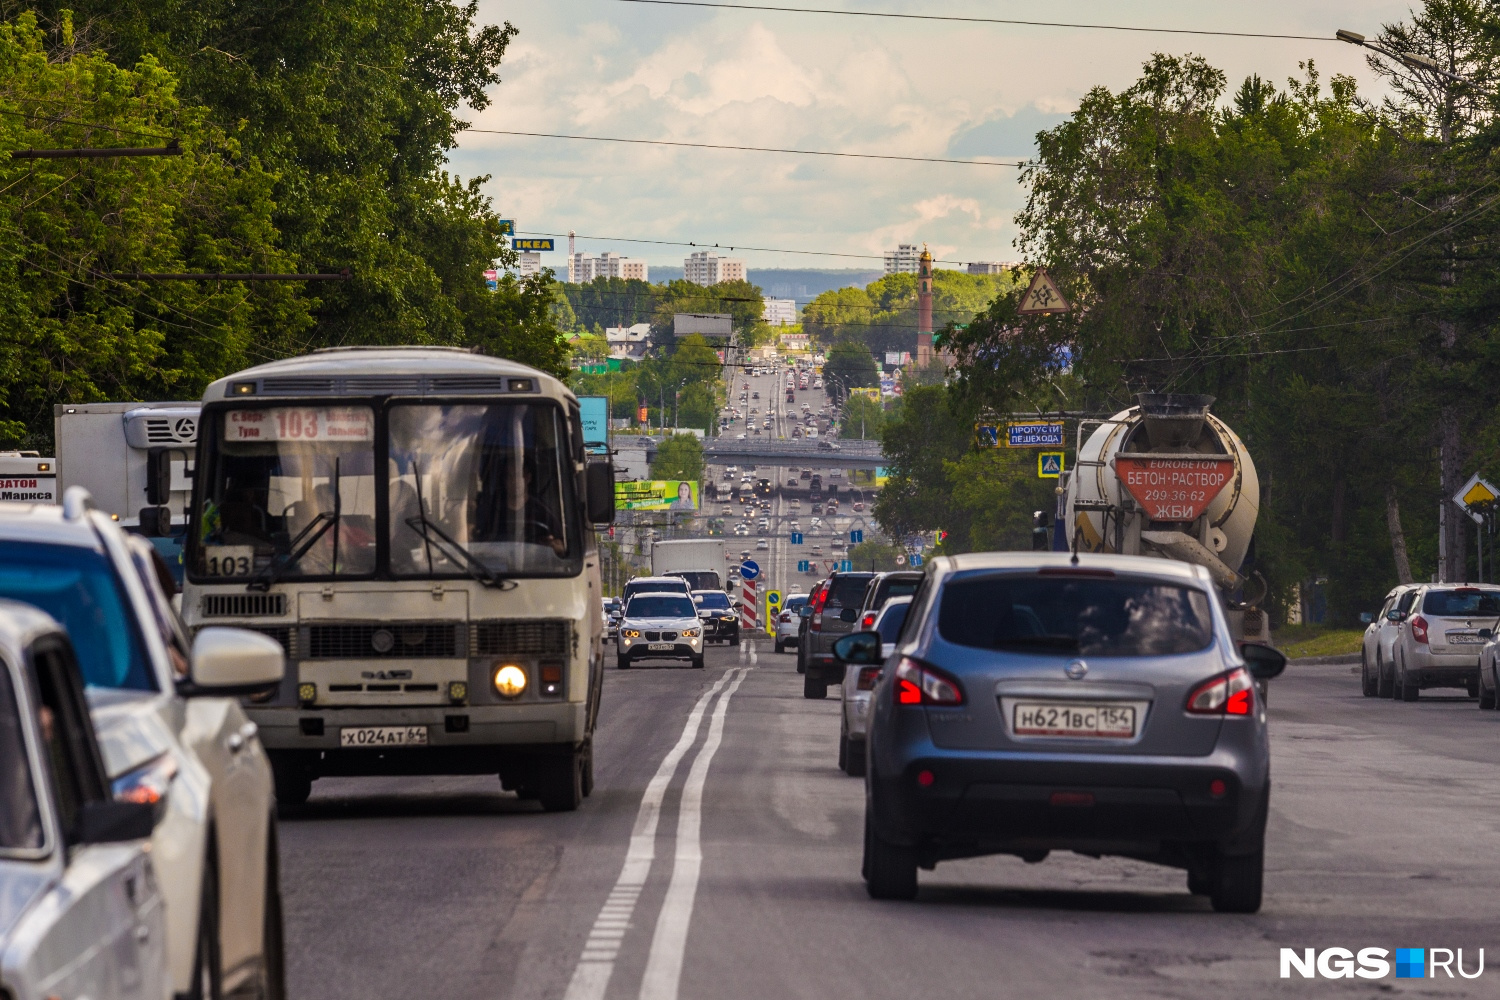 Ватутина — одна из самых аварийных улиц города